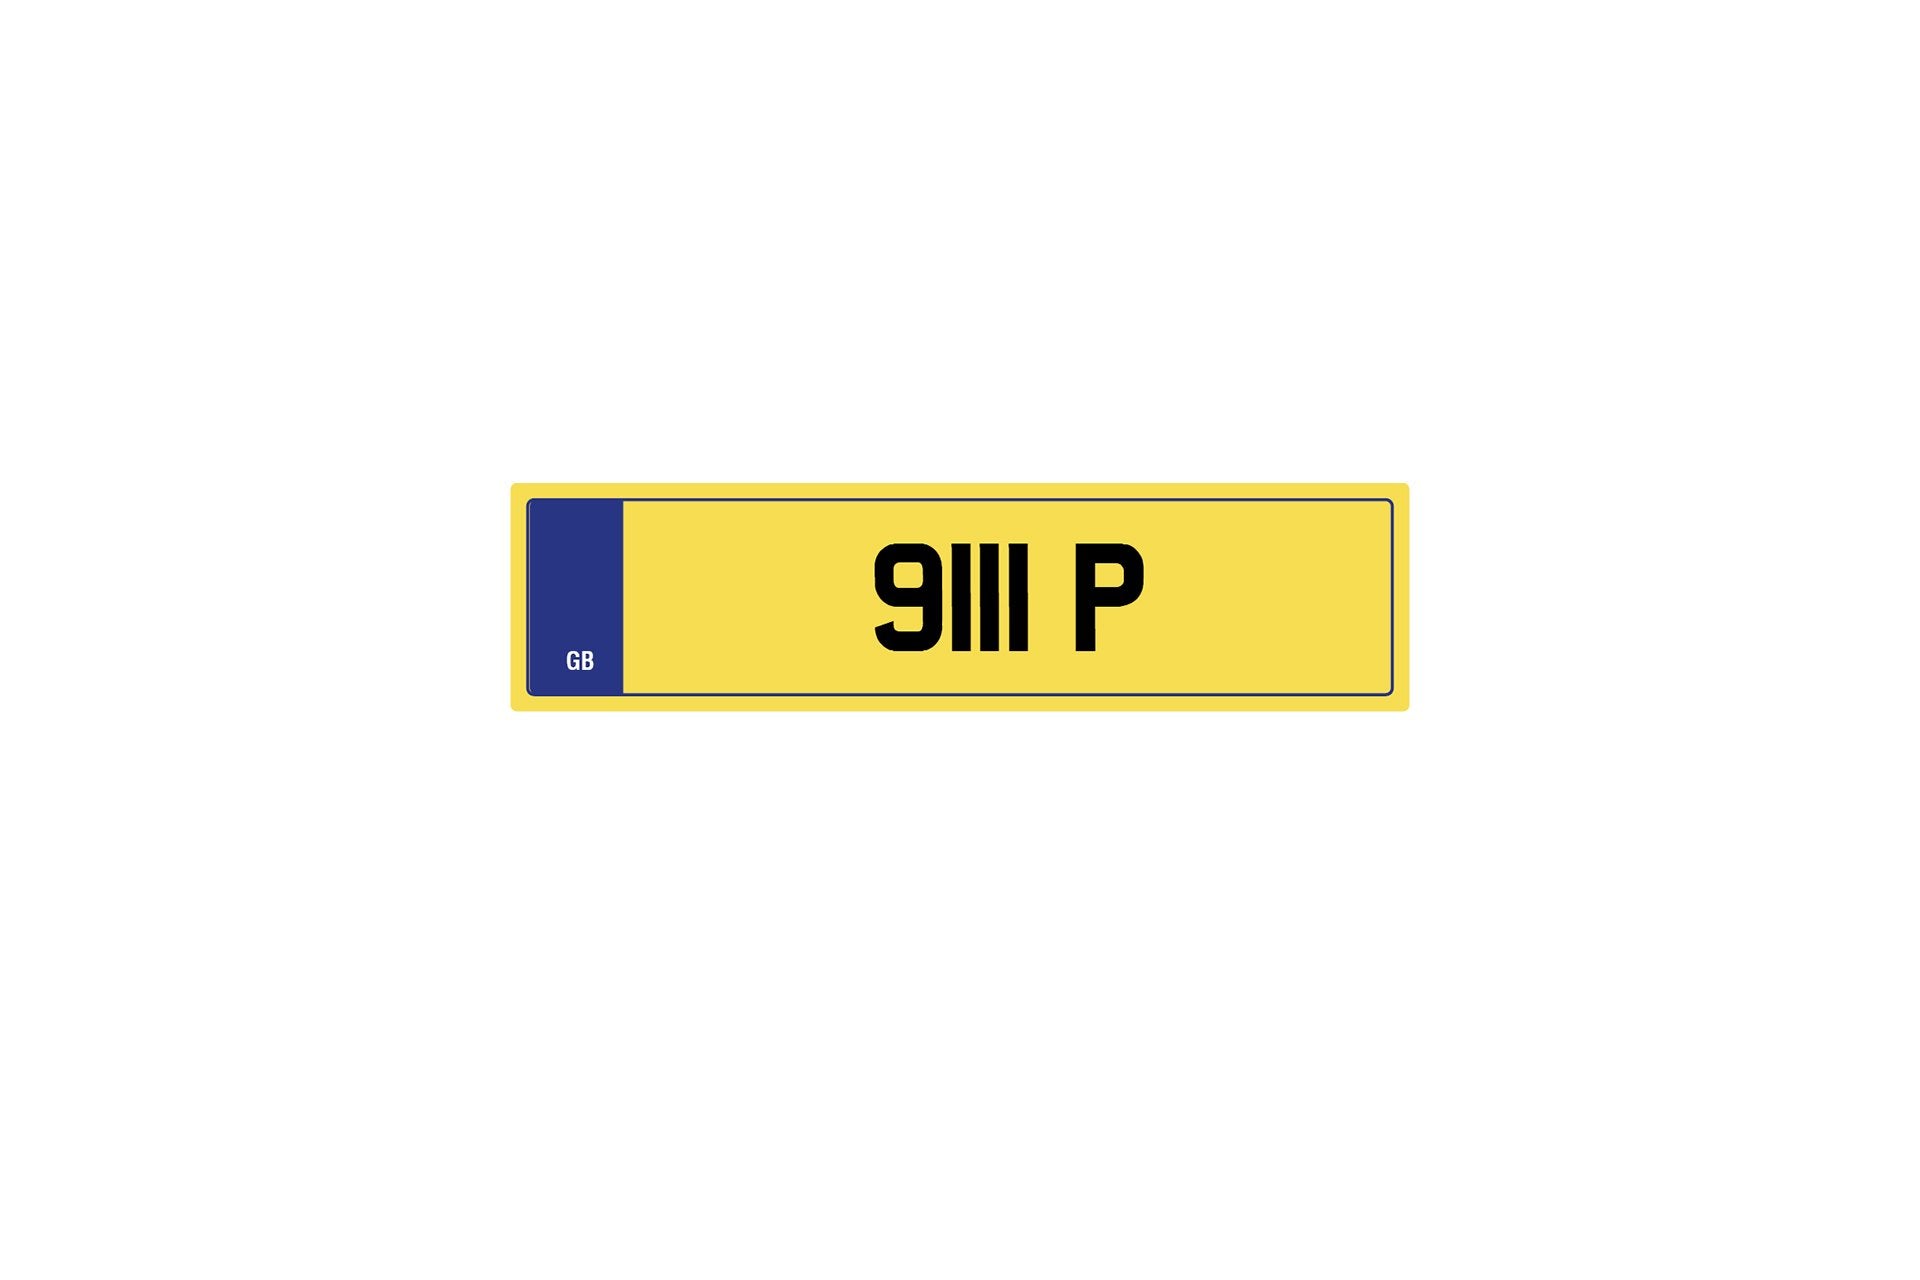 Private Plate 9111 P